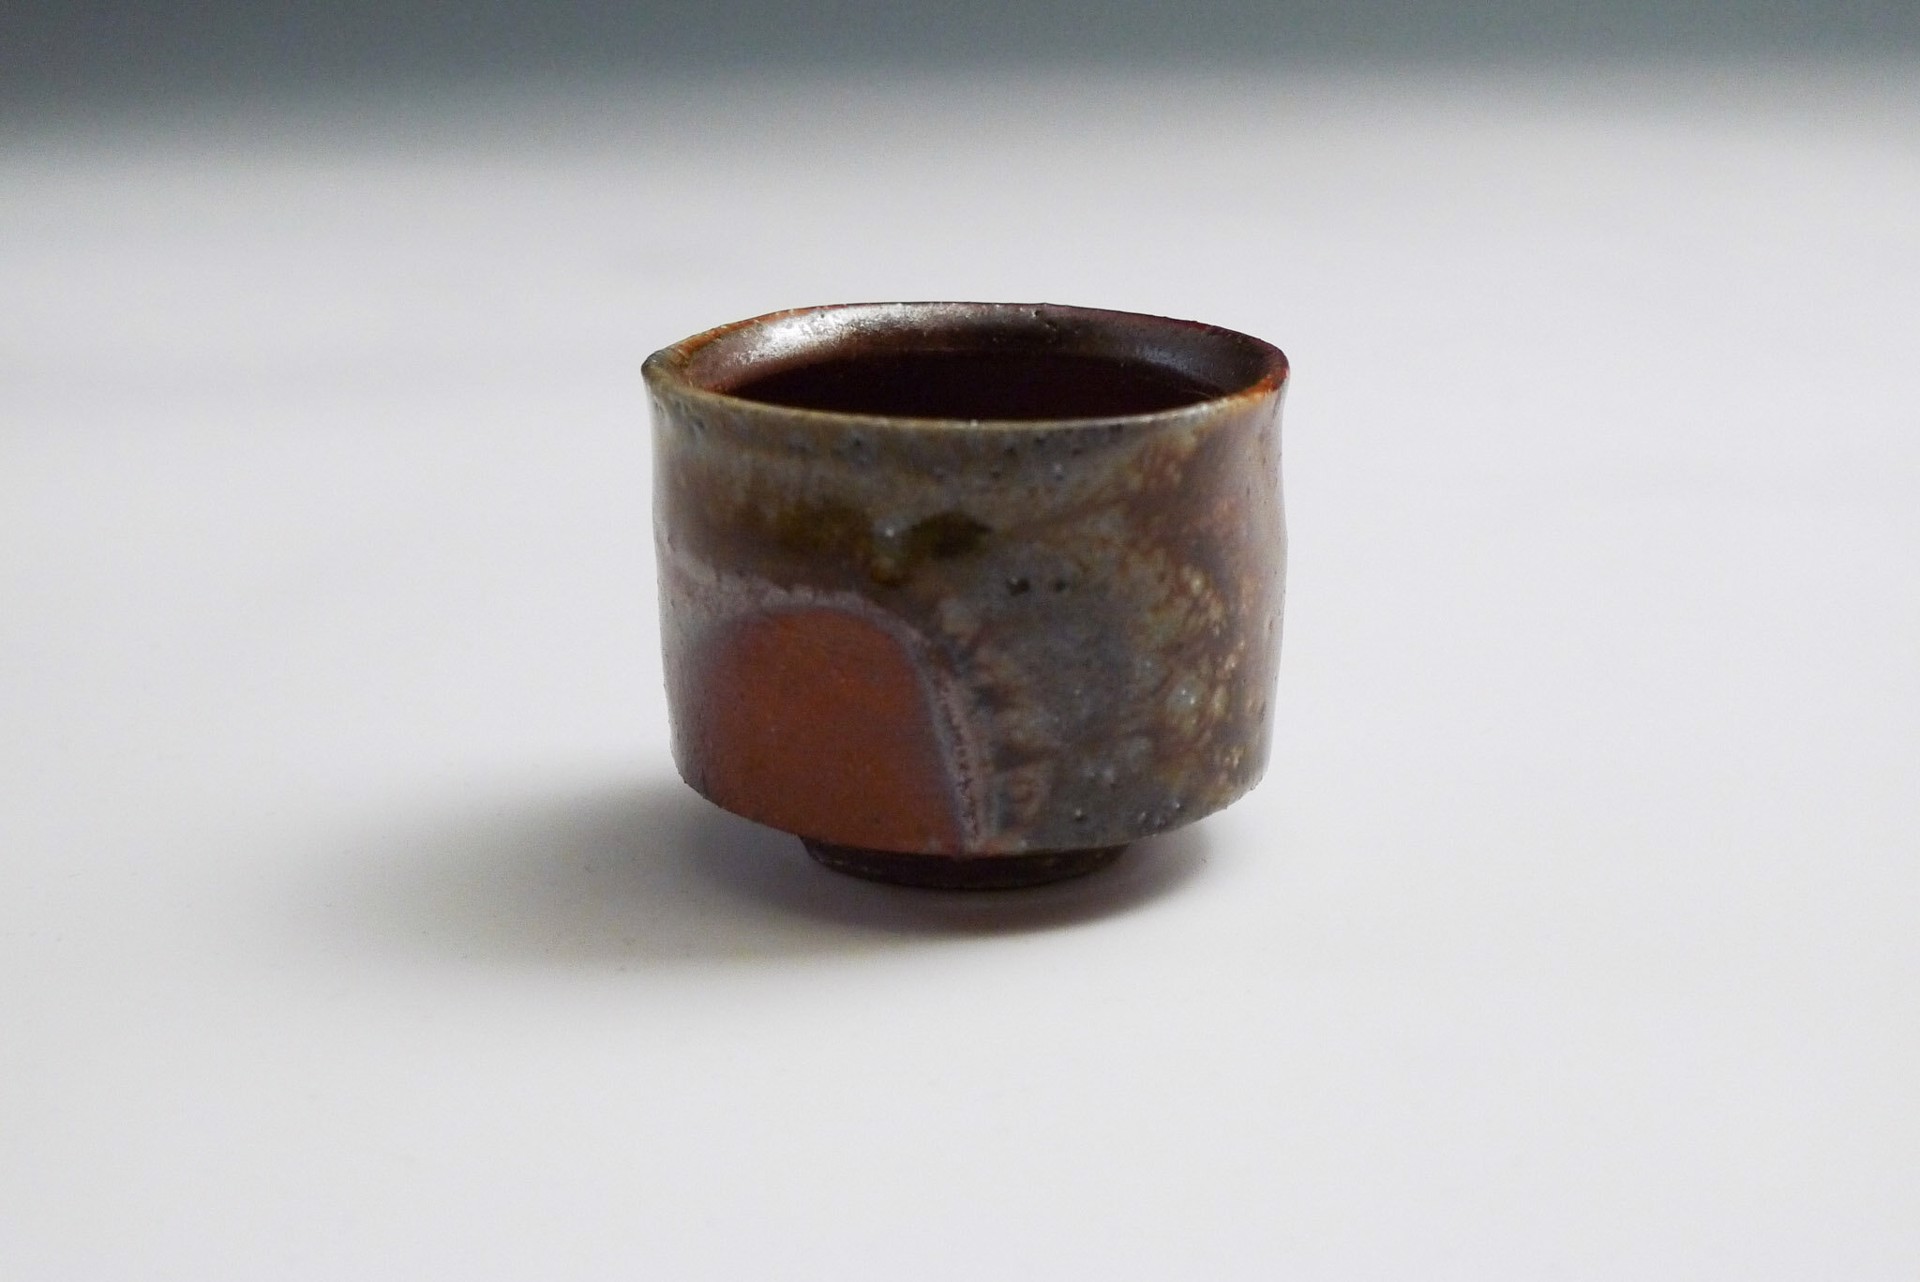 Small Sake Cup (Ochoko) by Shumpei Yamaki